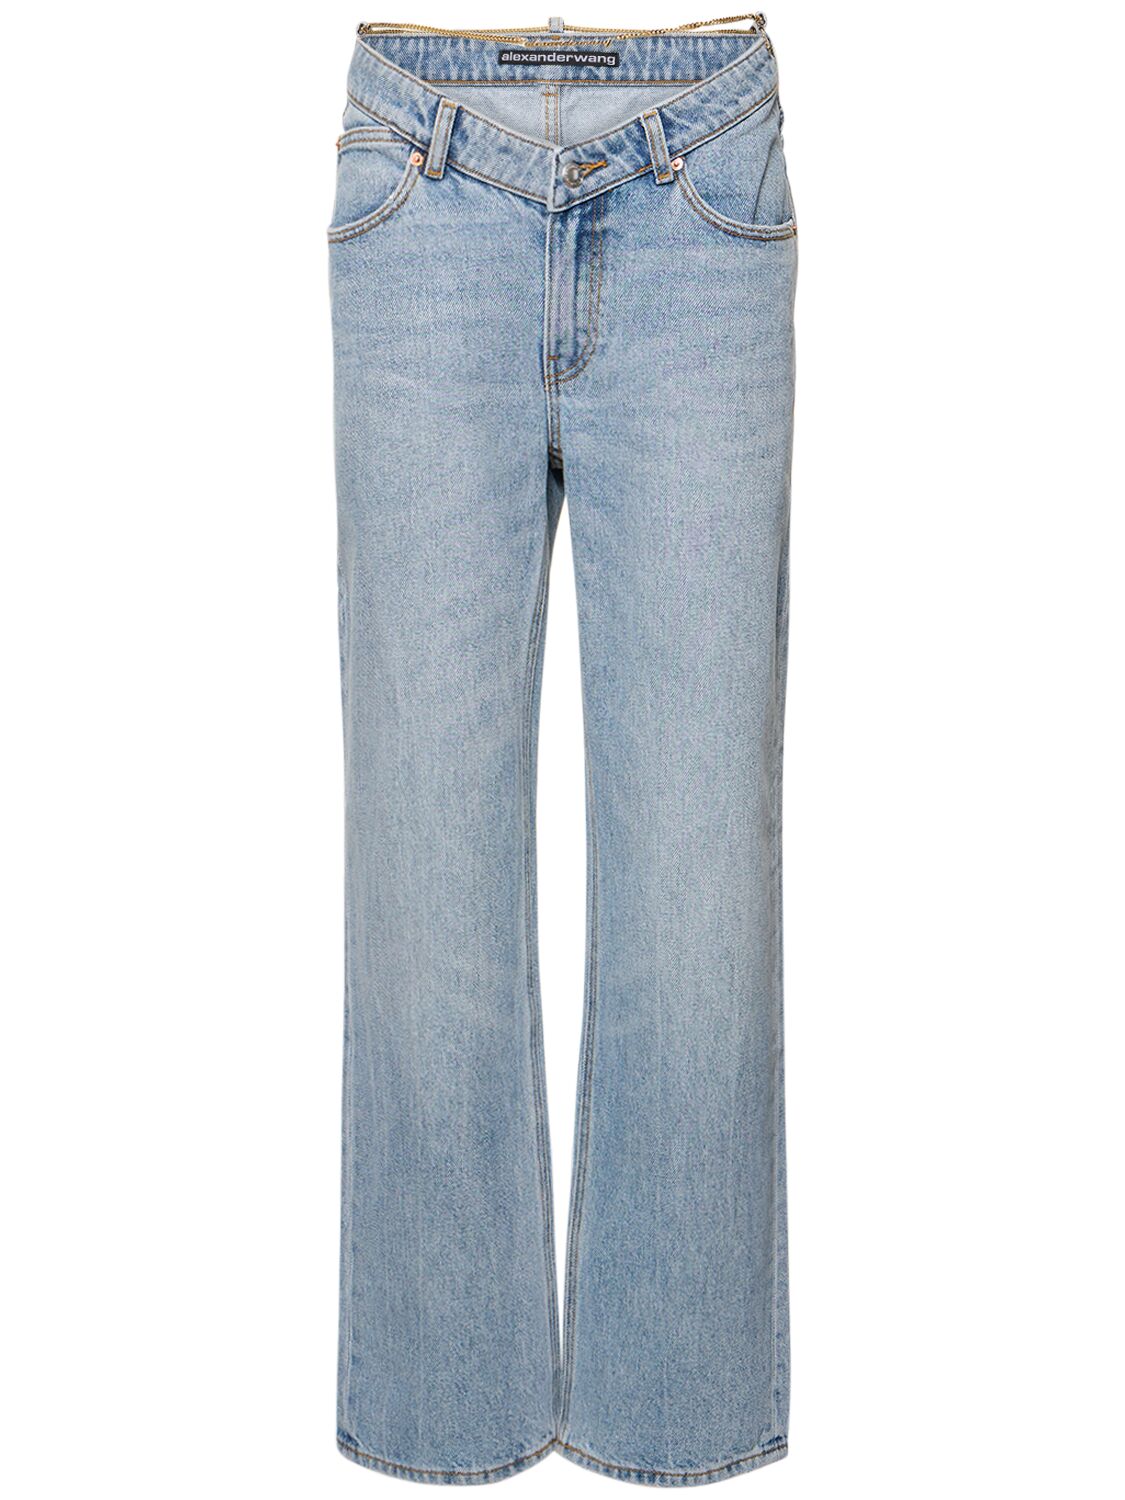 Mujer Jeans Con Cintura En V 26 - ALEXANDER WANG - Modalova